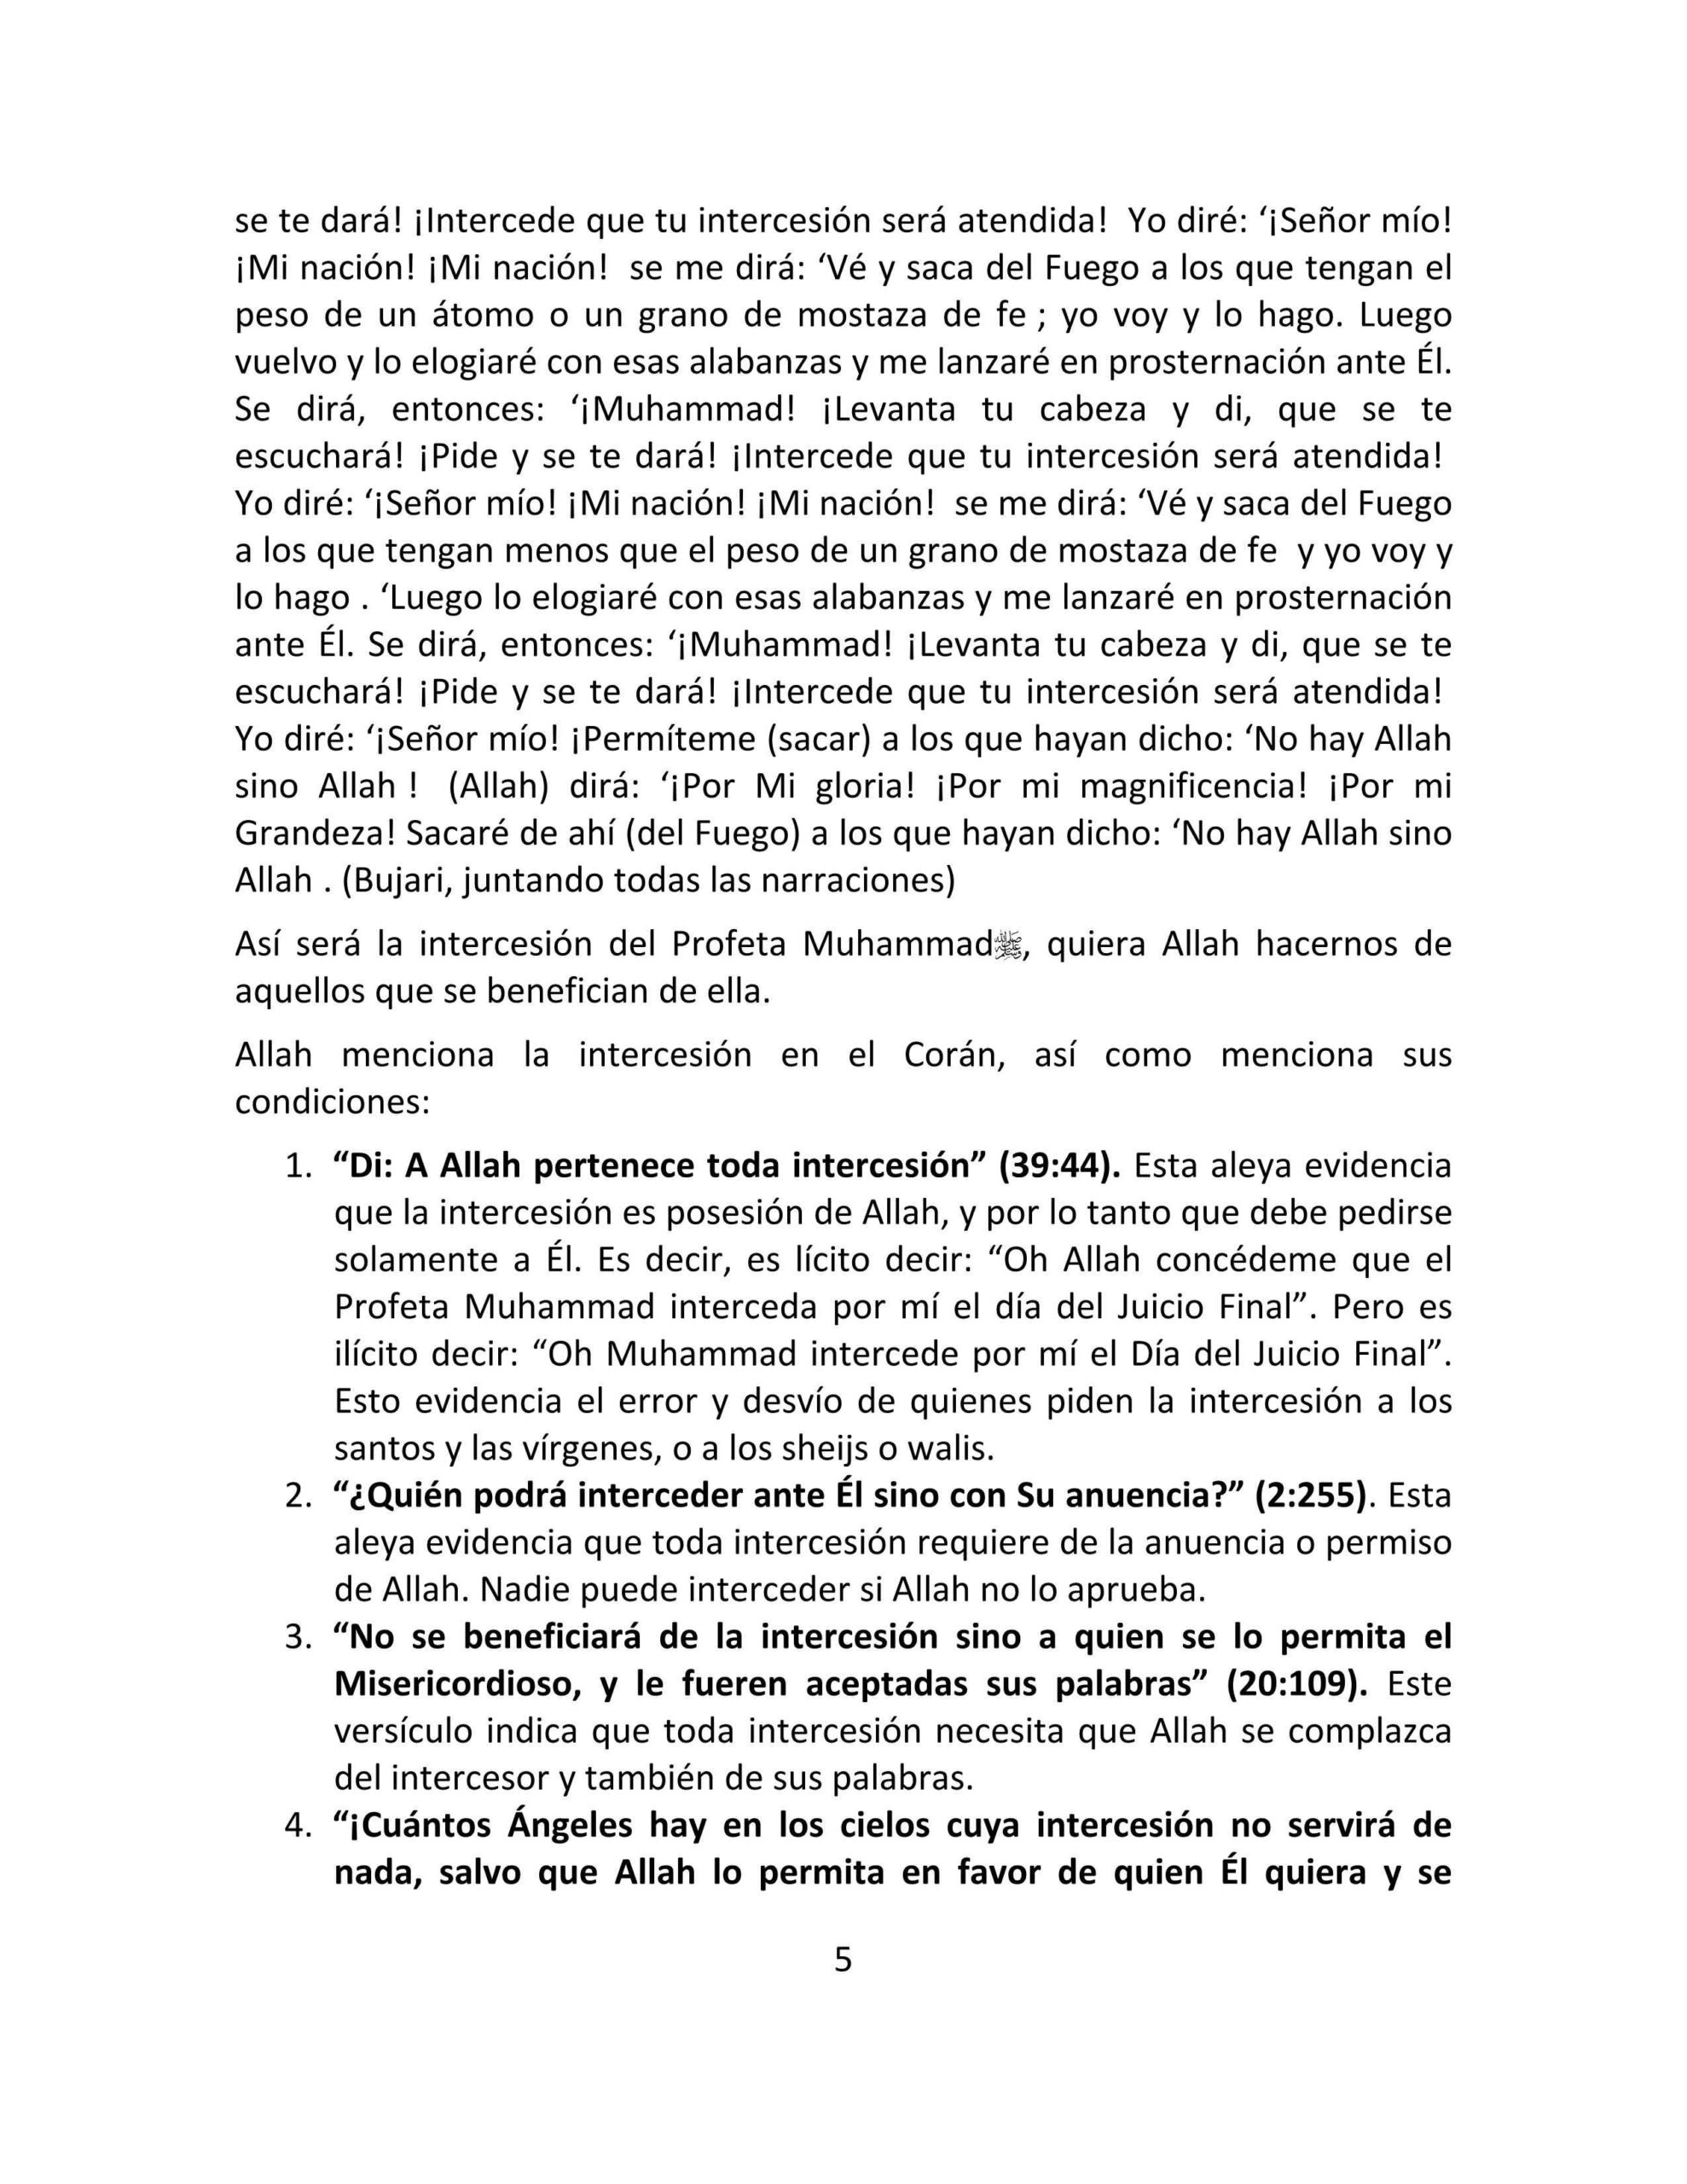 إسباني - الشفاعة العظمى - La intercesión del Profeta.pdf, 7-Sayfa 